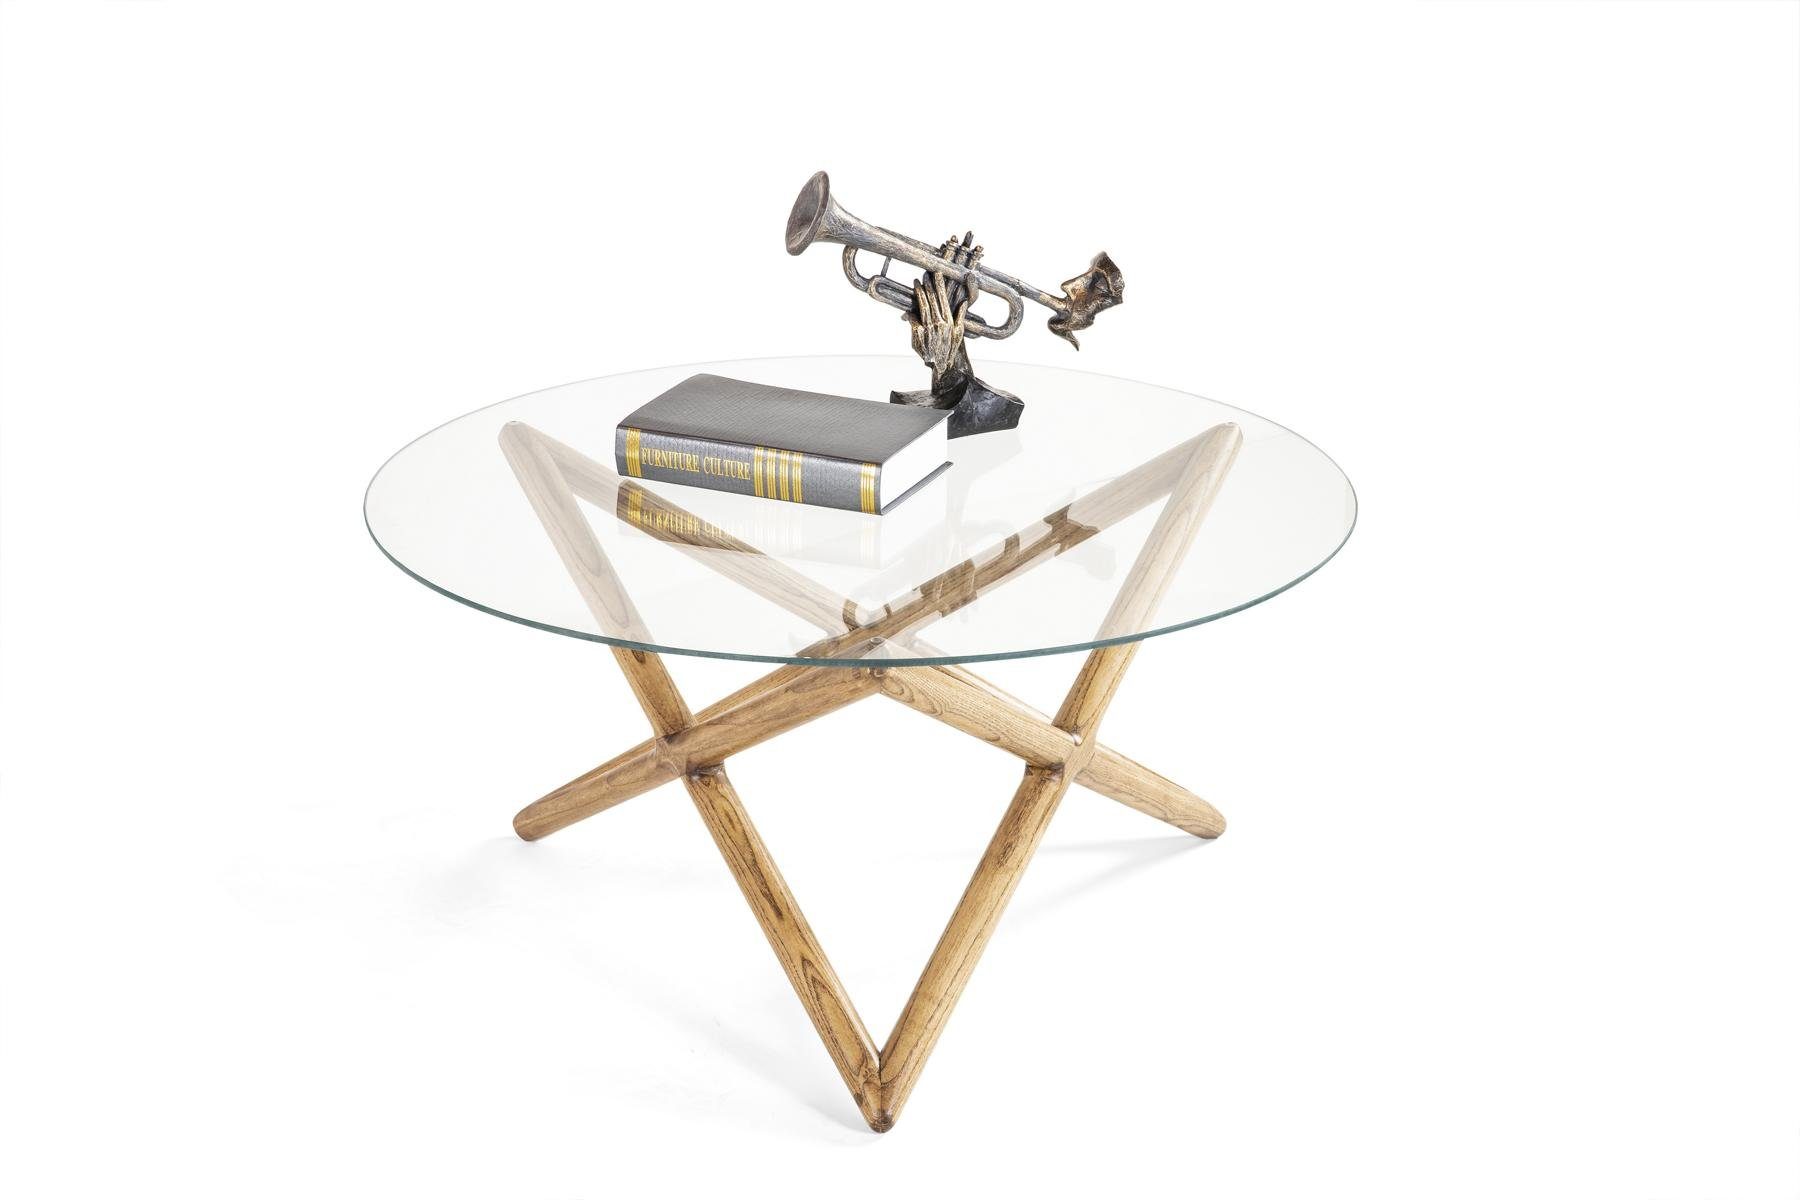 (Couchtisch), Möbel Design Couchtisch Beistelltisch Made Luxus Couchtisch Tisch Holz Europe Modern JVmoebel in